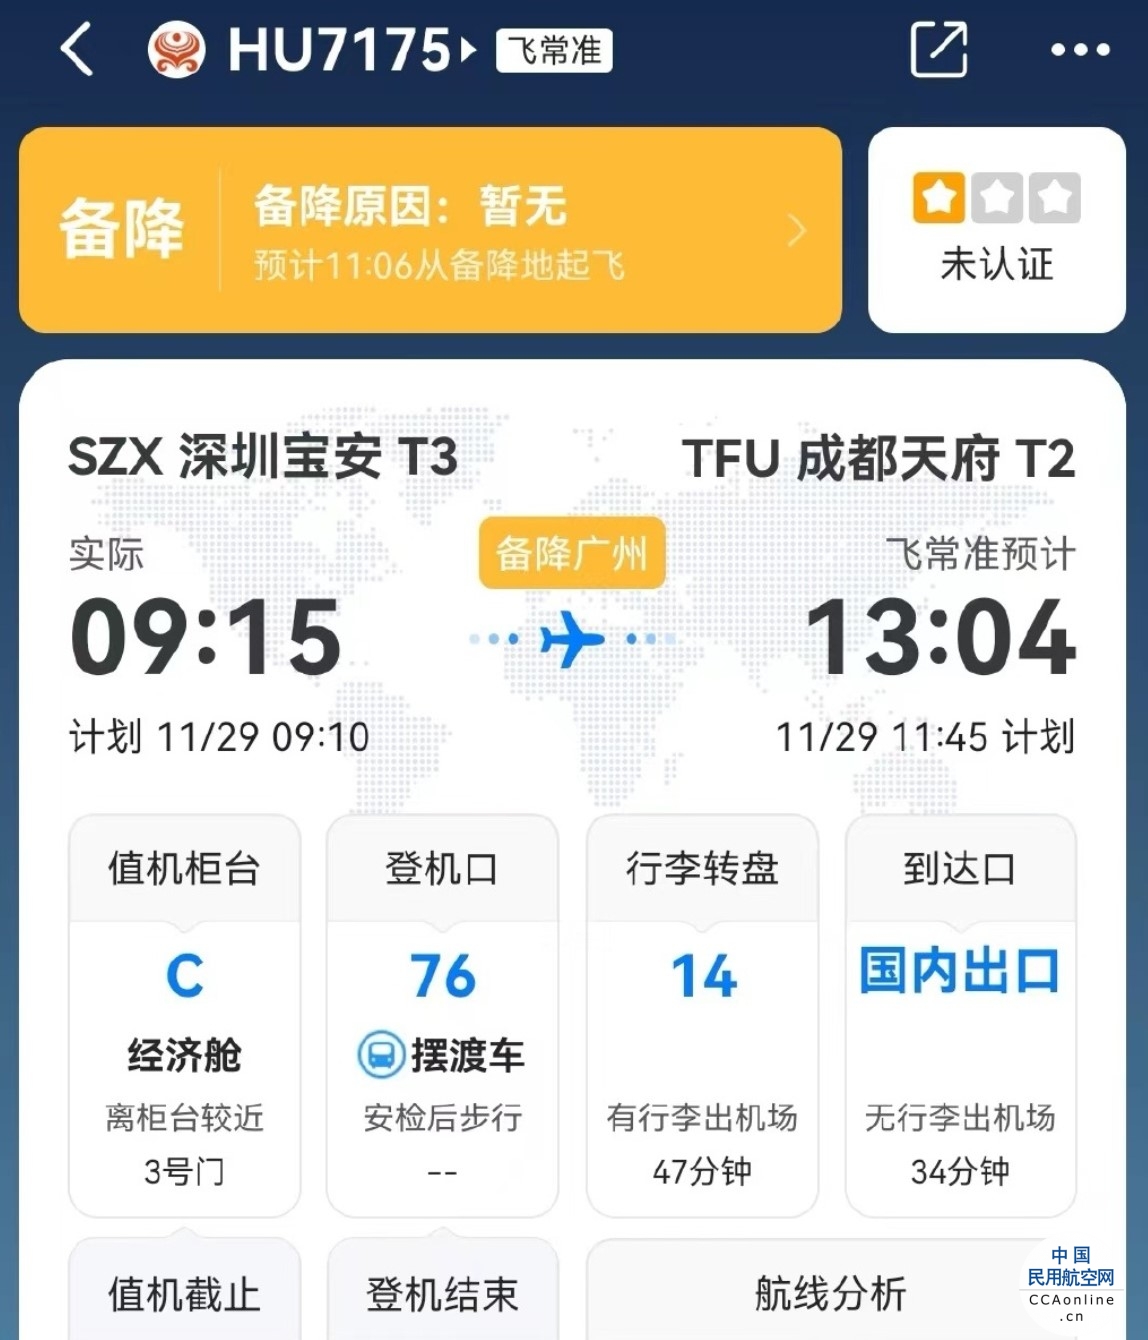 旅客飞行途中突发身体不适 海航航班紧急备降广州